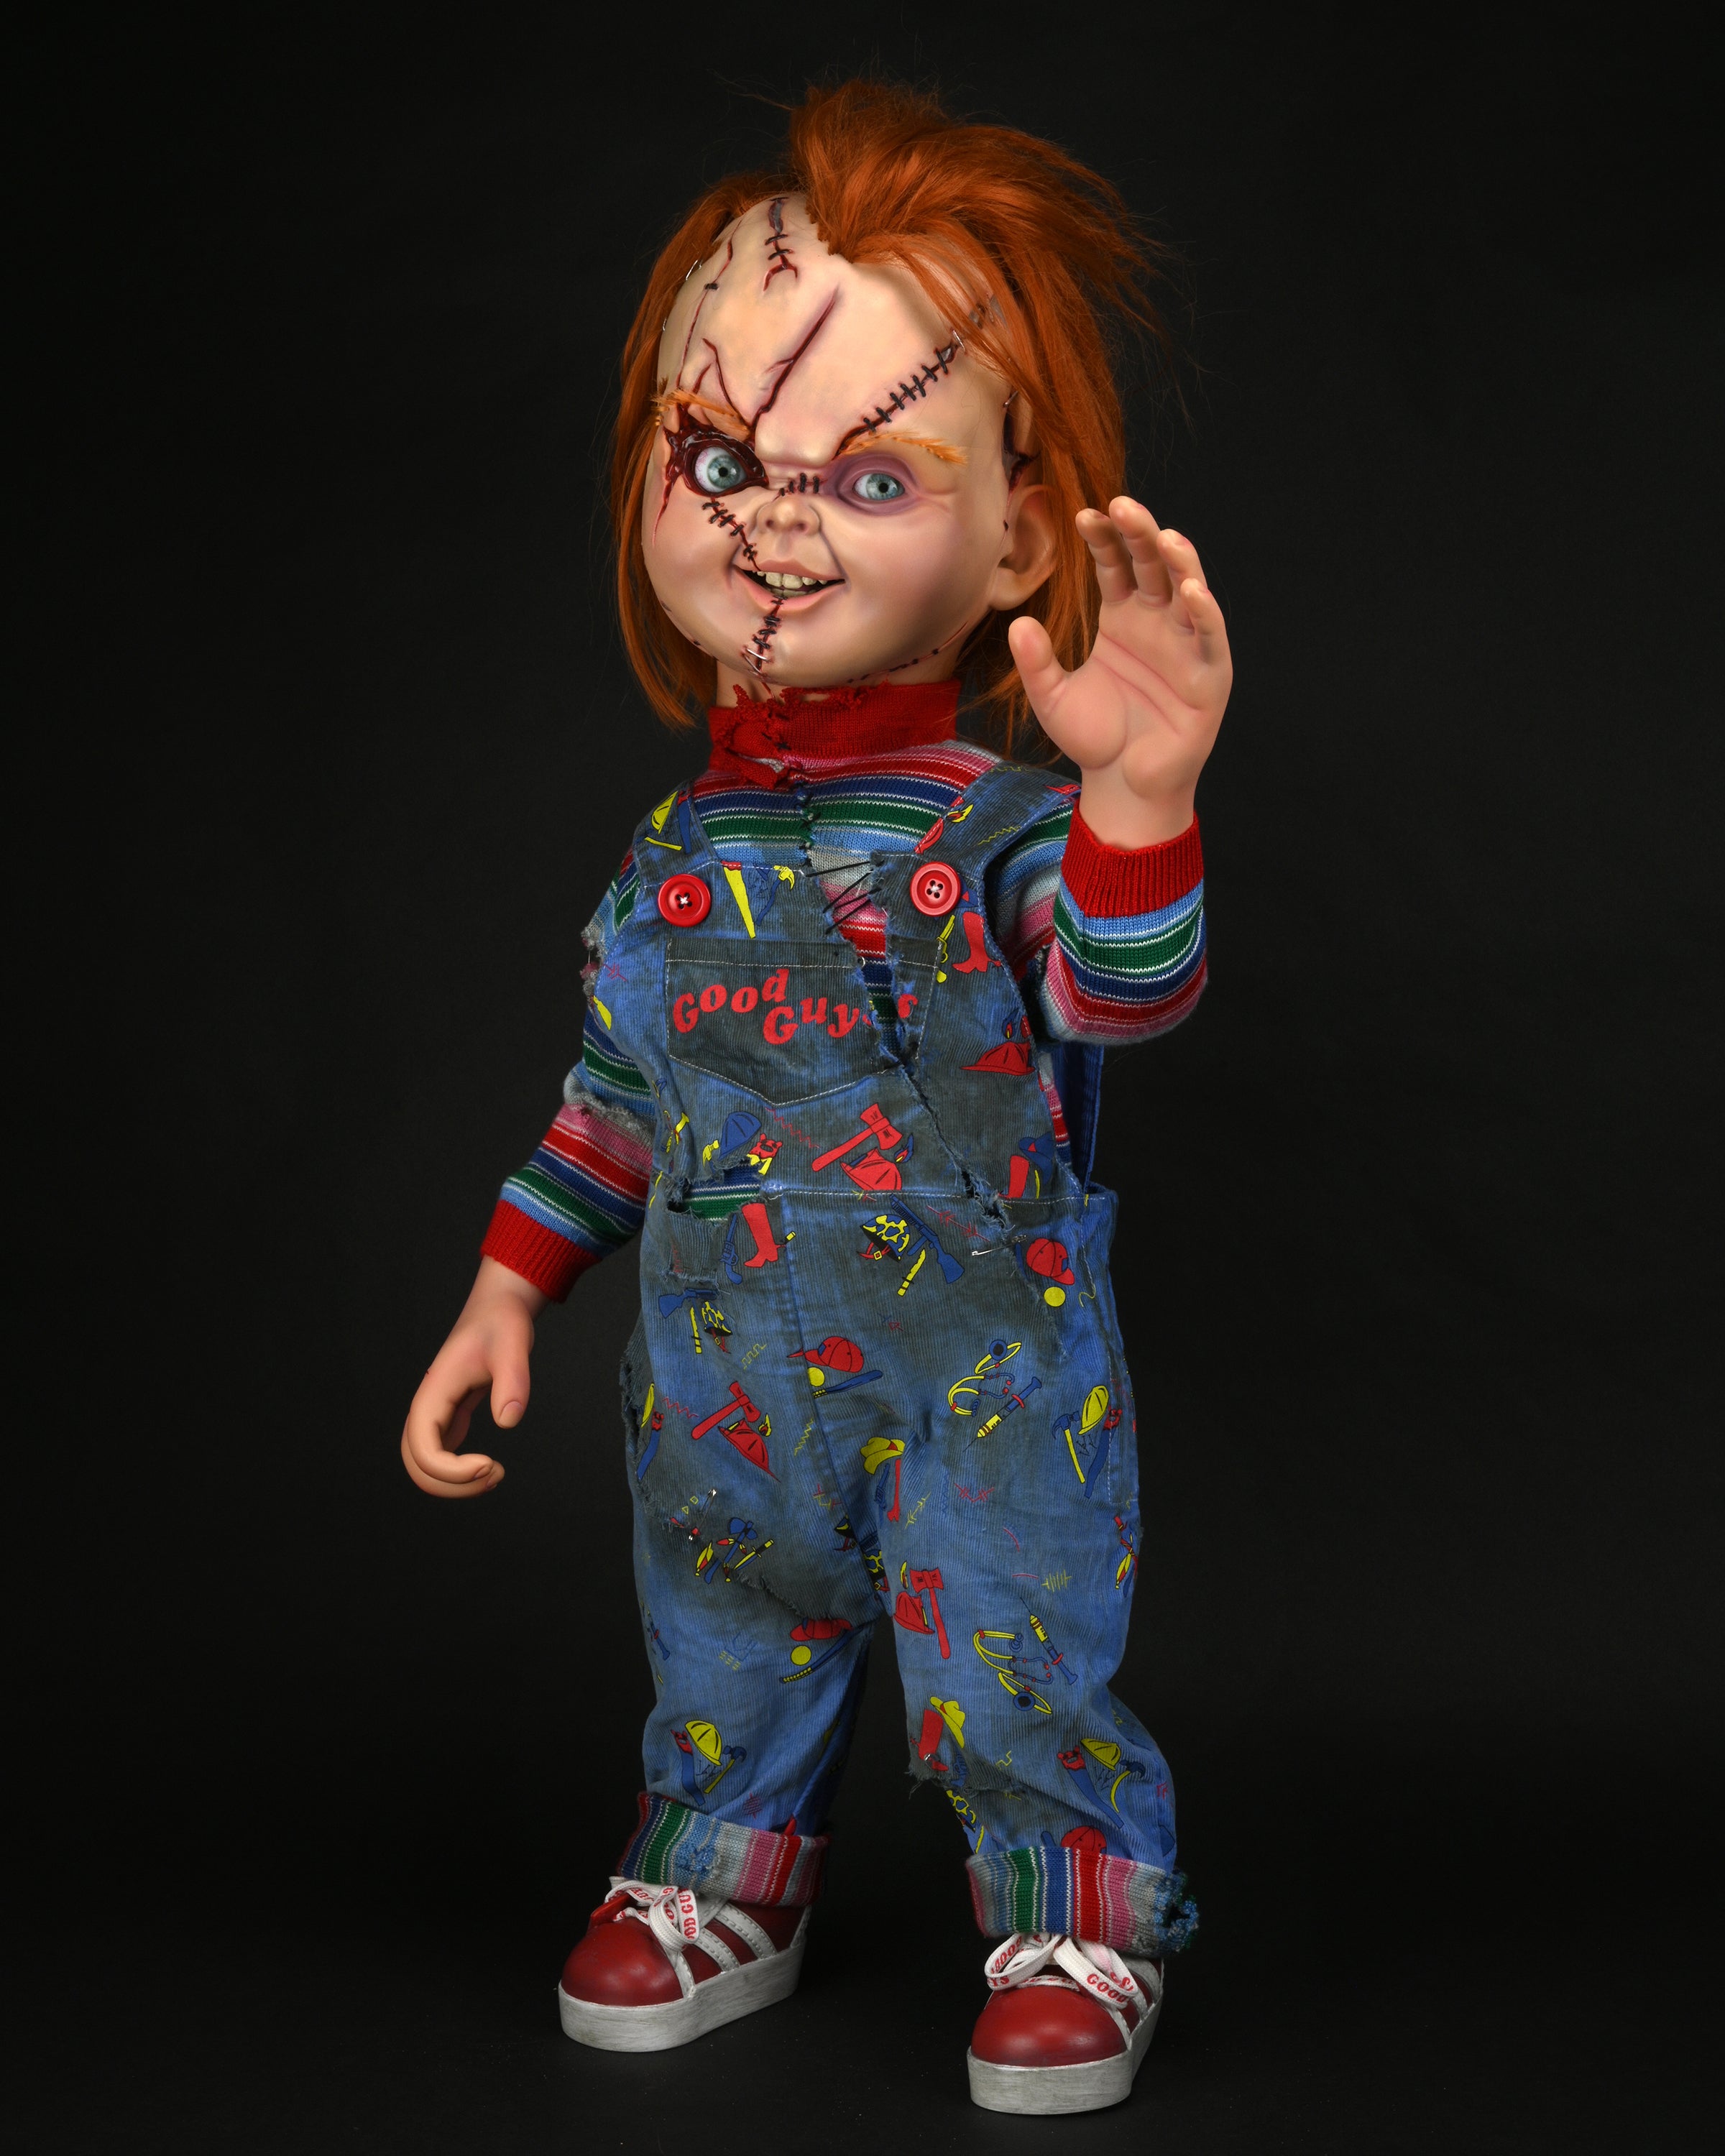 Bride Of Chucky - 1:1 Replica - Life-Size Chucky – Neca